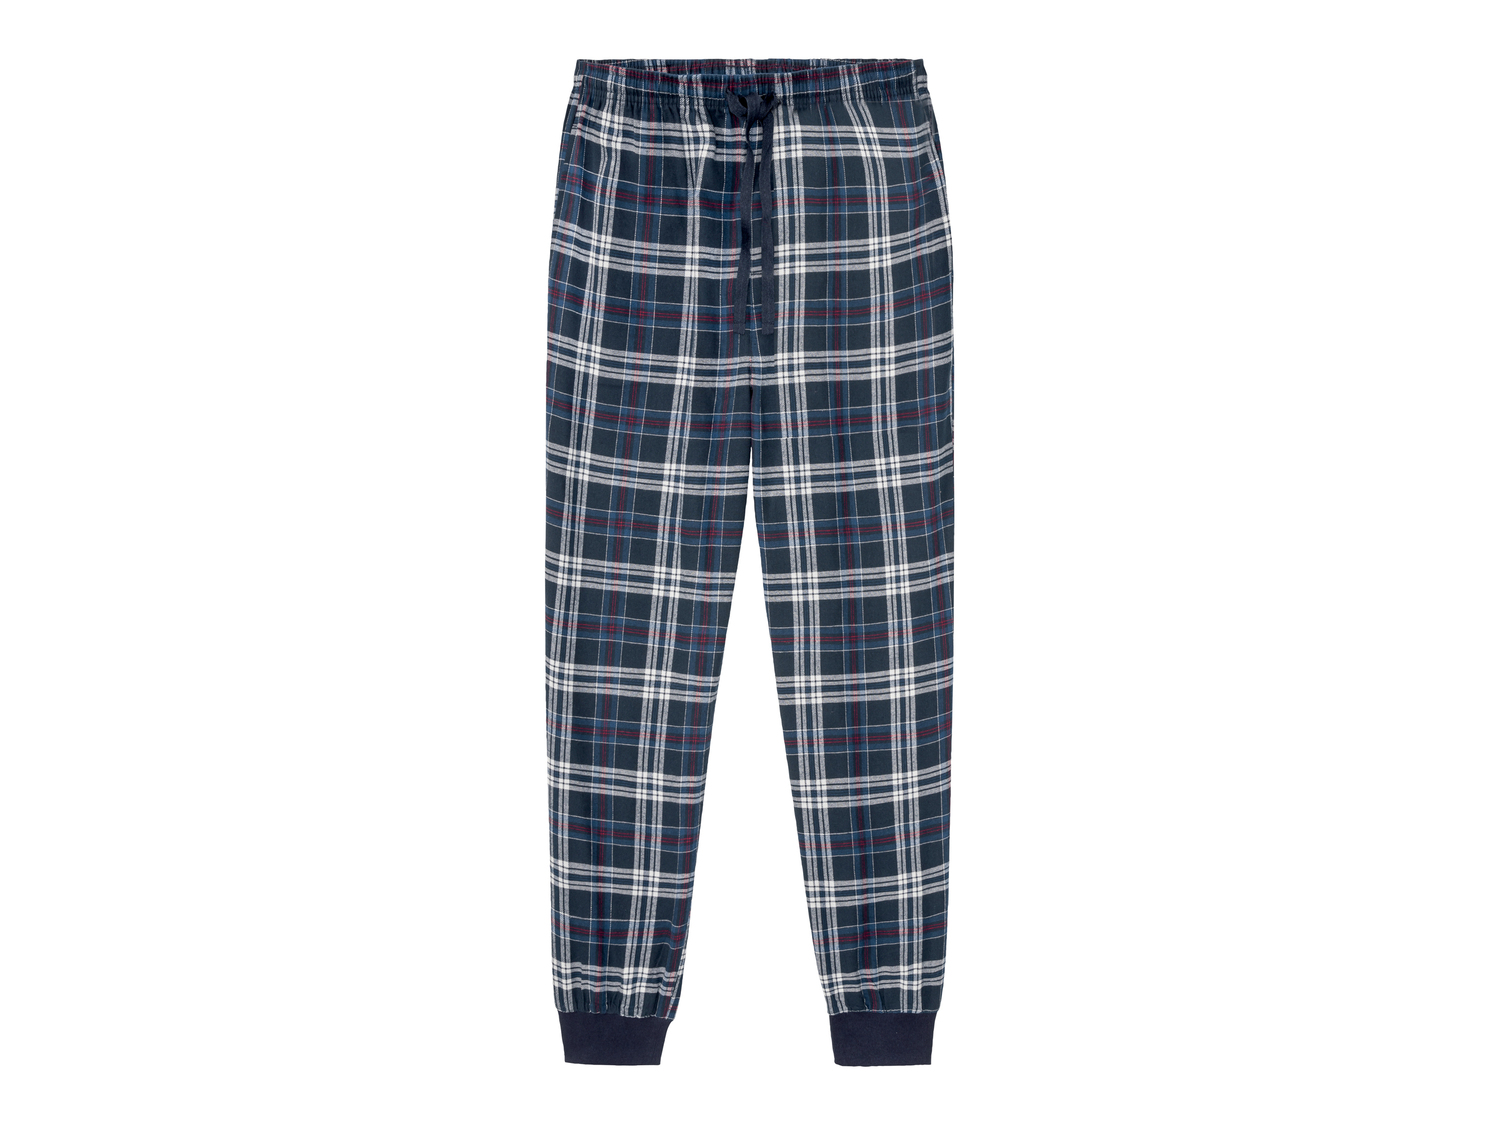 Pantaloni pigiama da uomo Livergy, prezzo 4.99 € 
Misure: S-XL 
- 
Puro cotone
Prodotto ...